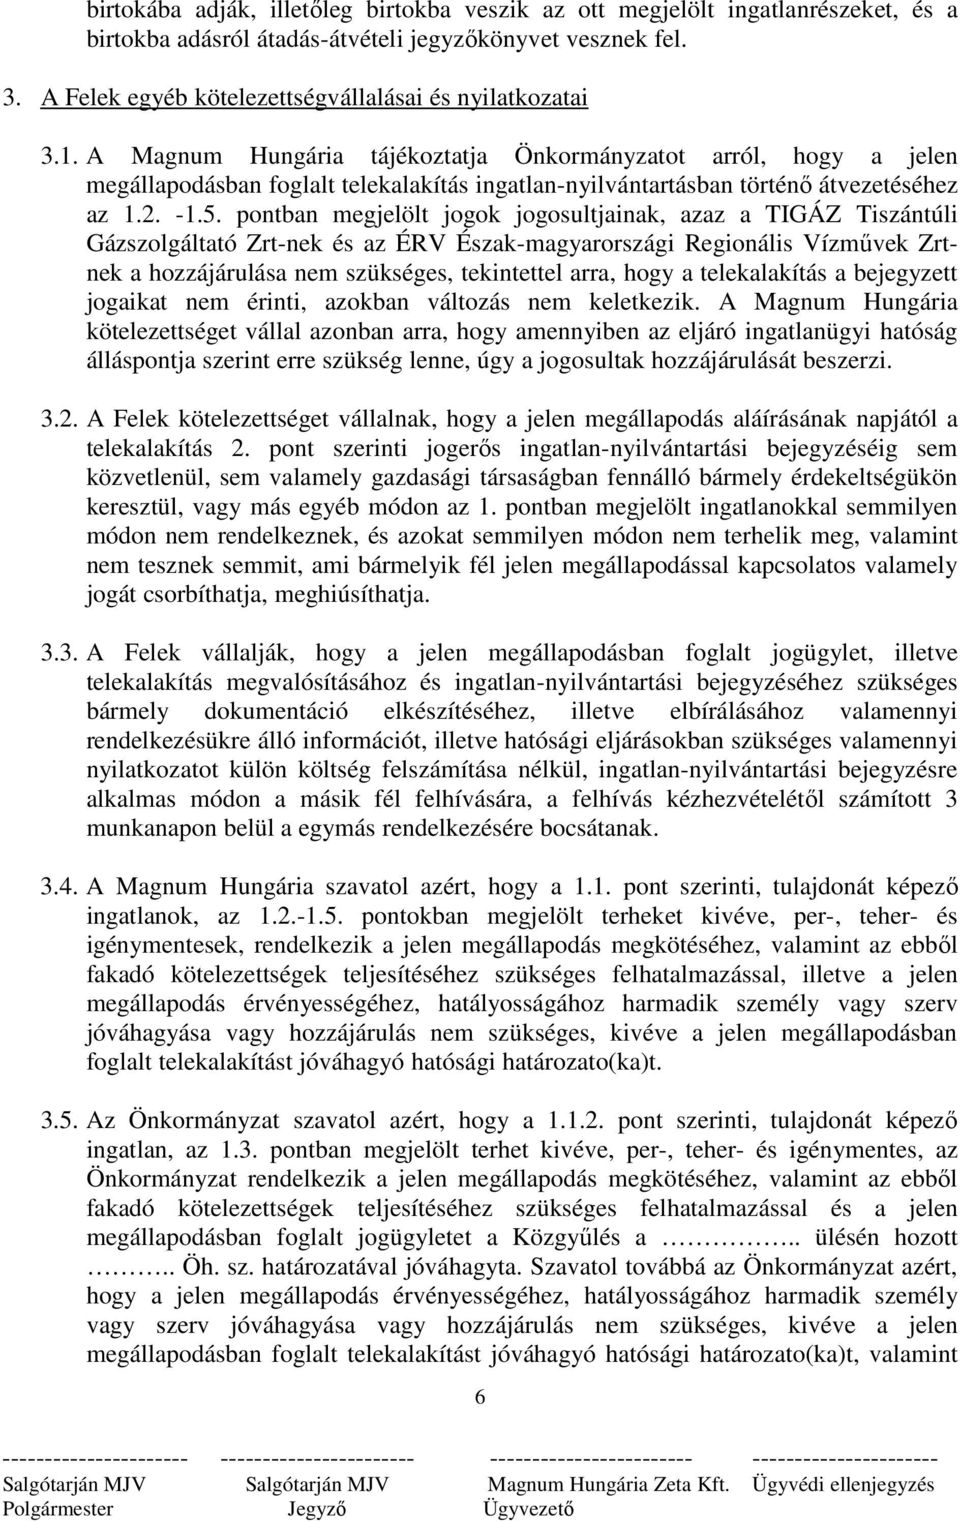 A Magnum Hungária tájékoztatja Önkormányzatot arról, hogy a jelen megállapodásban foglalt telekalakítás ingatlan-nyilvántartásban történı átvezetéséhez az 1.2. -1.5.